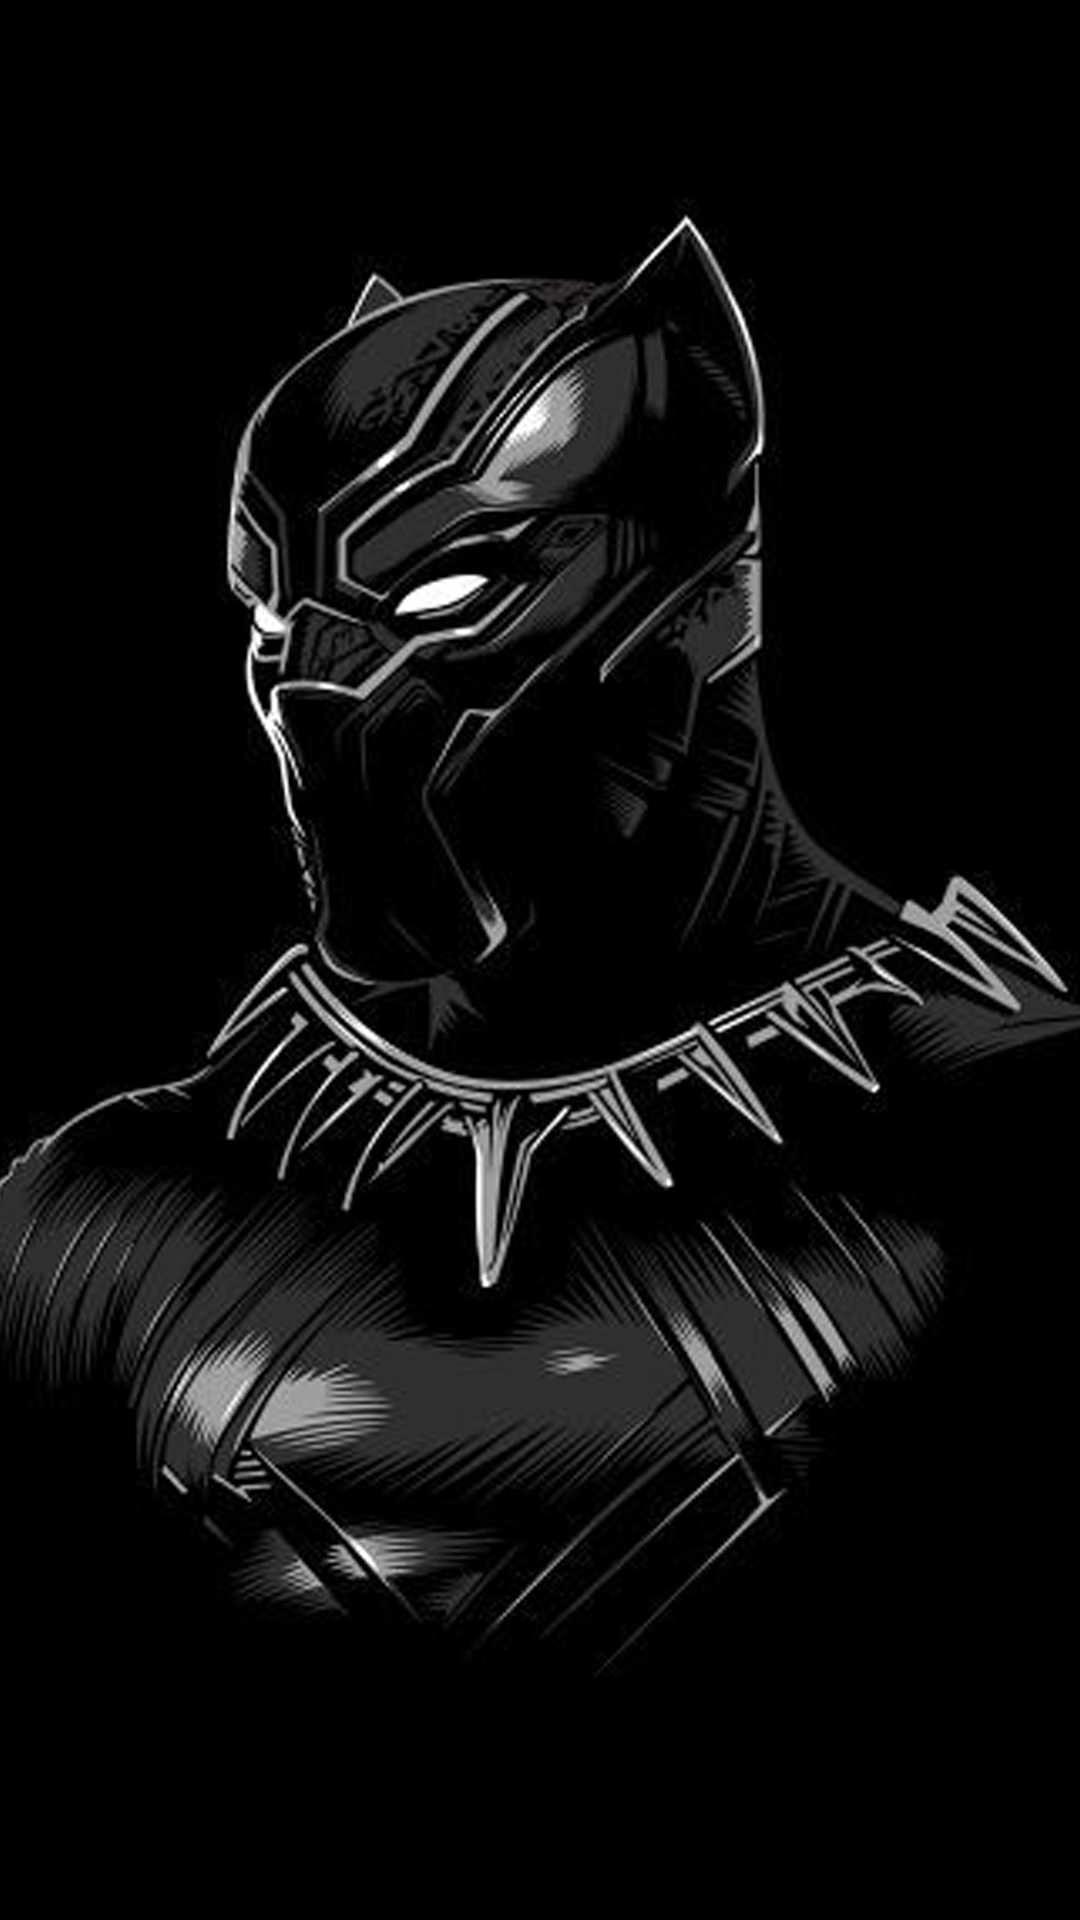 Black Panther iPhone Wallpaper Free Black Panther iPhone